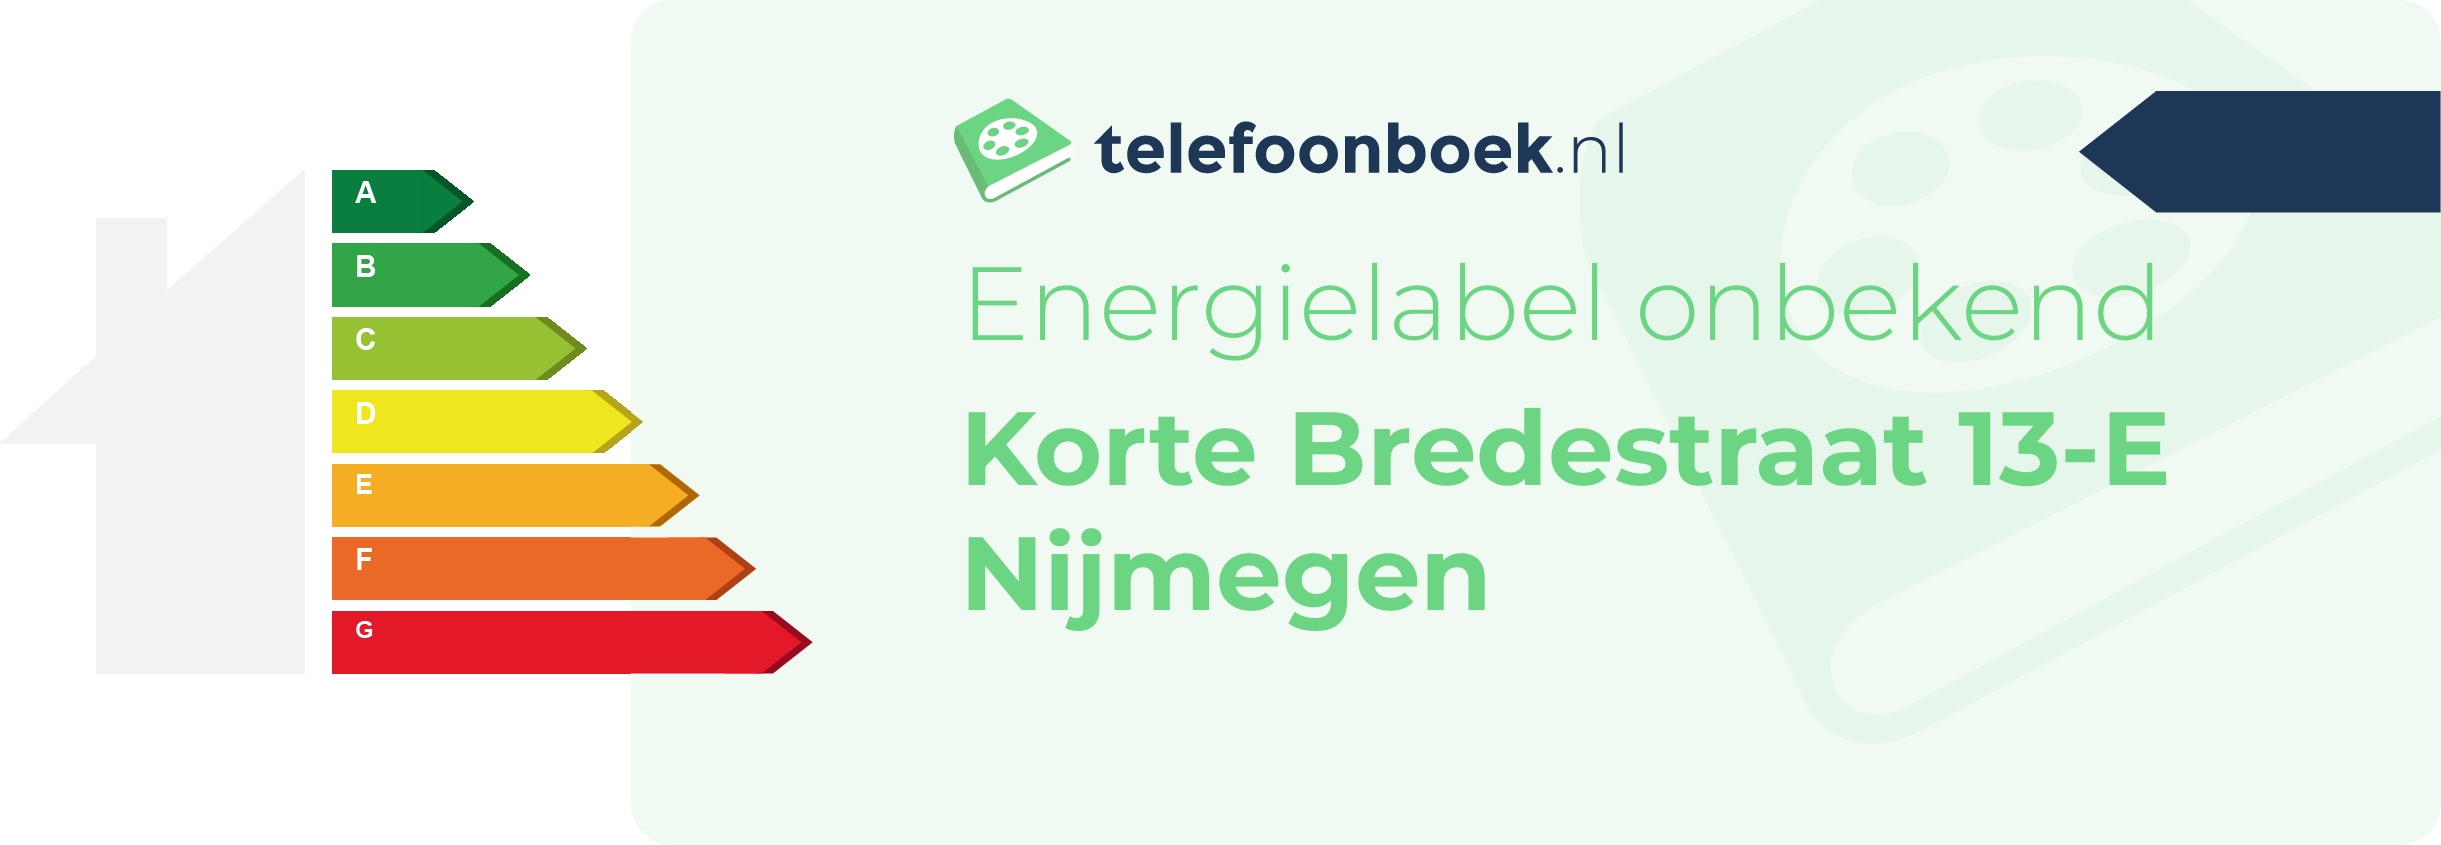 Energielabel Korte Bredestraat 13-E Nijmegen